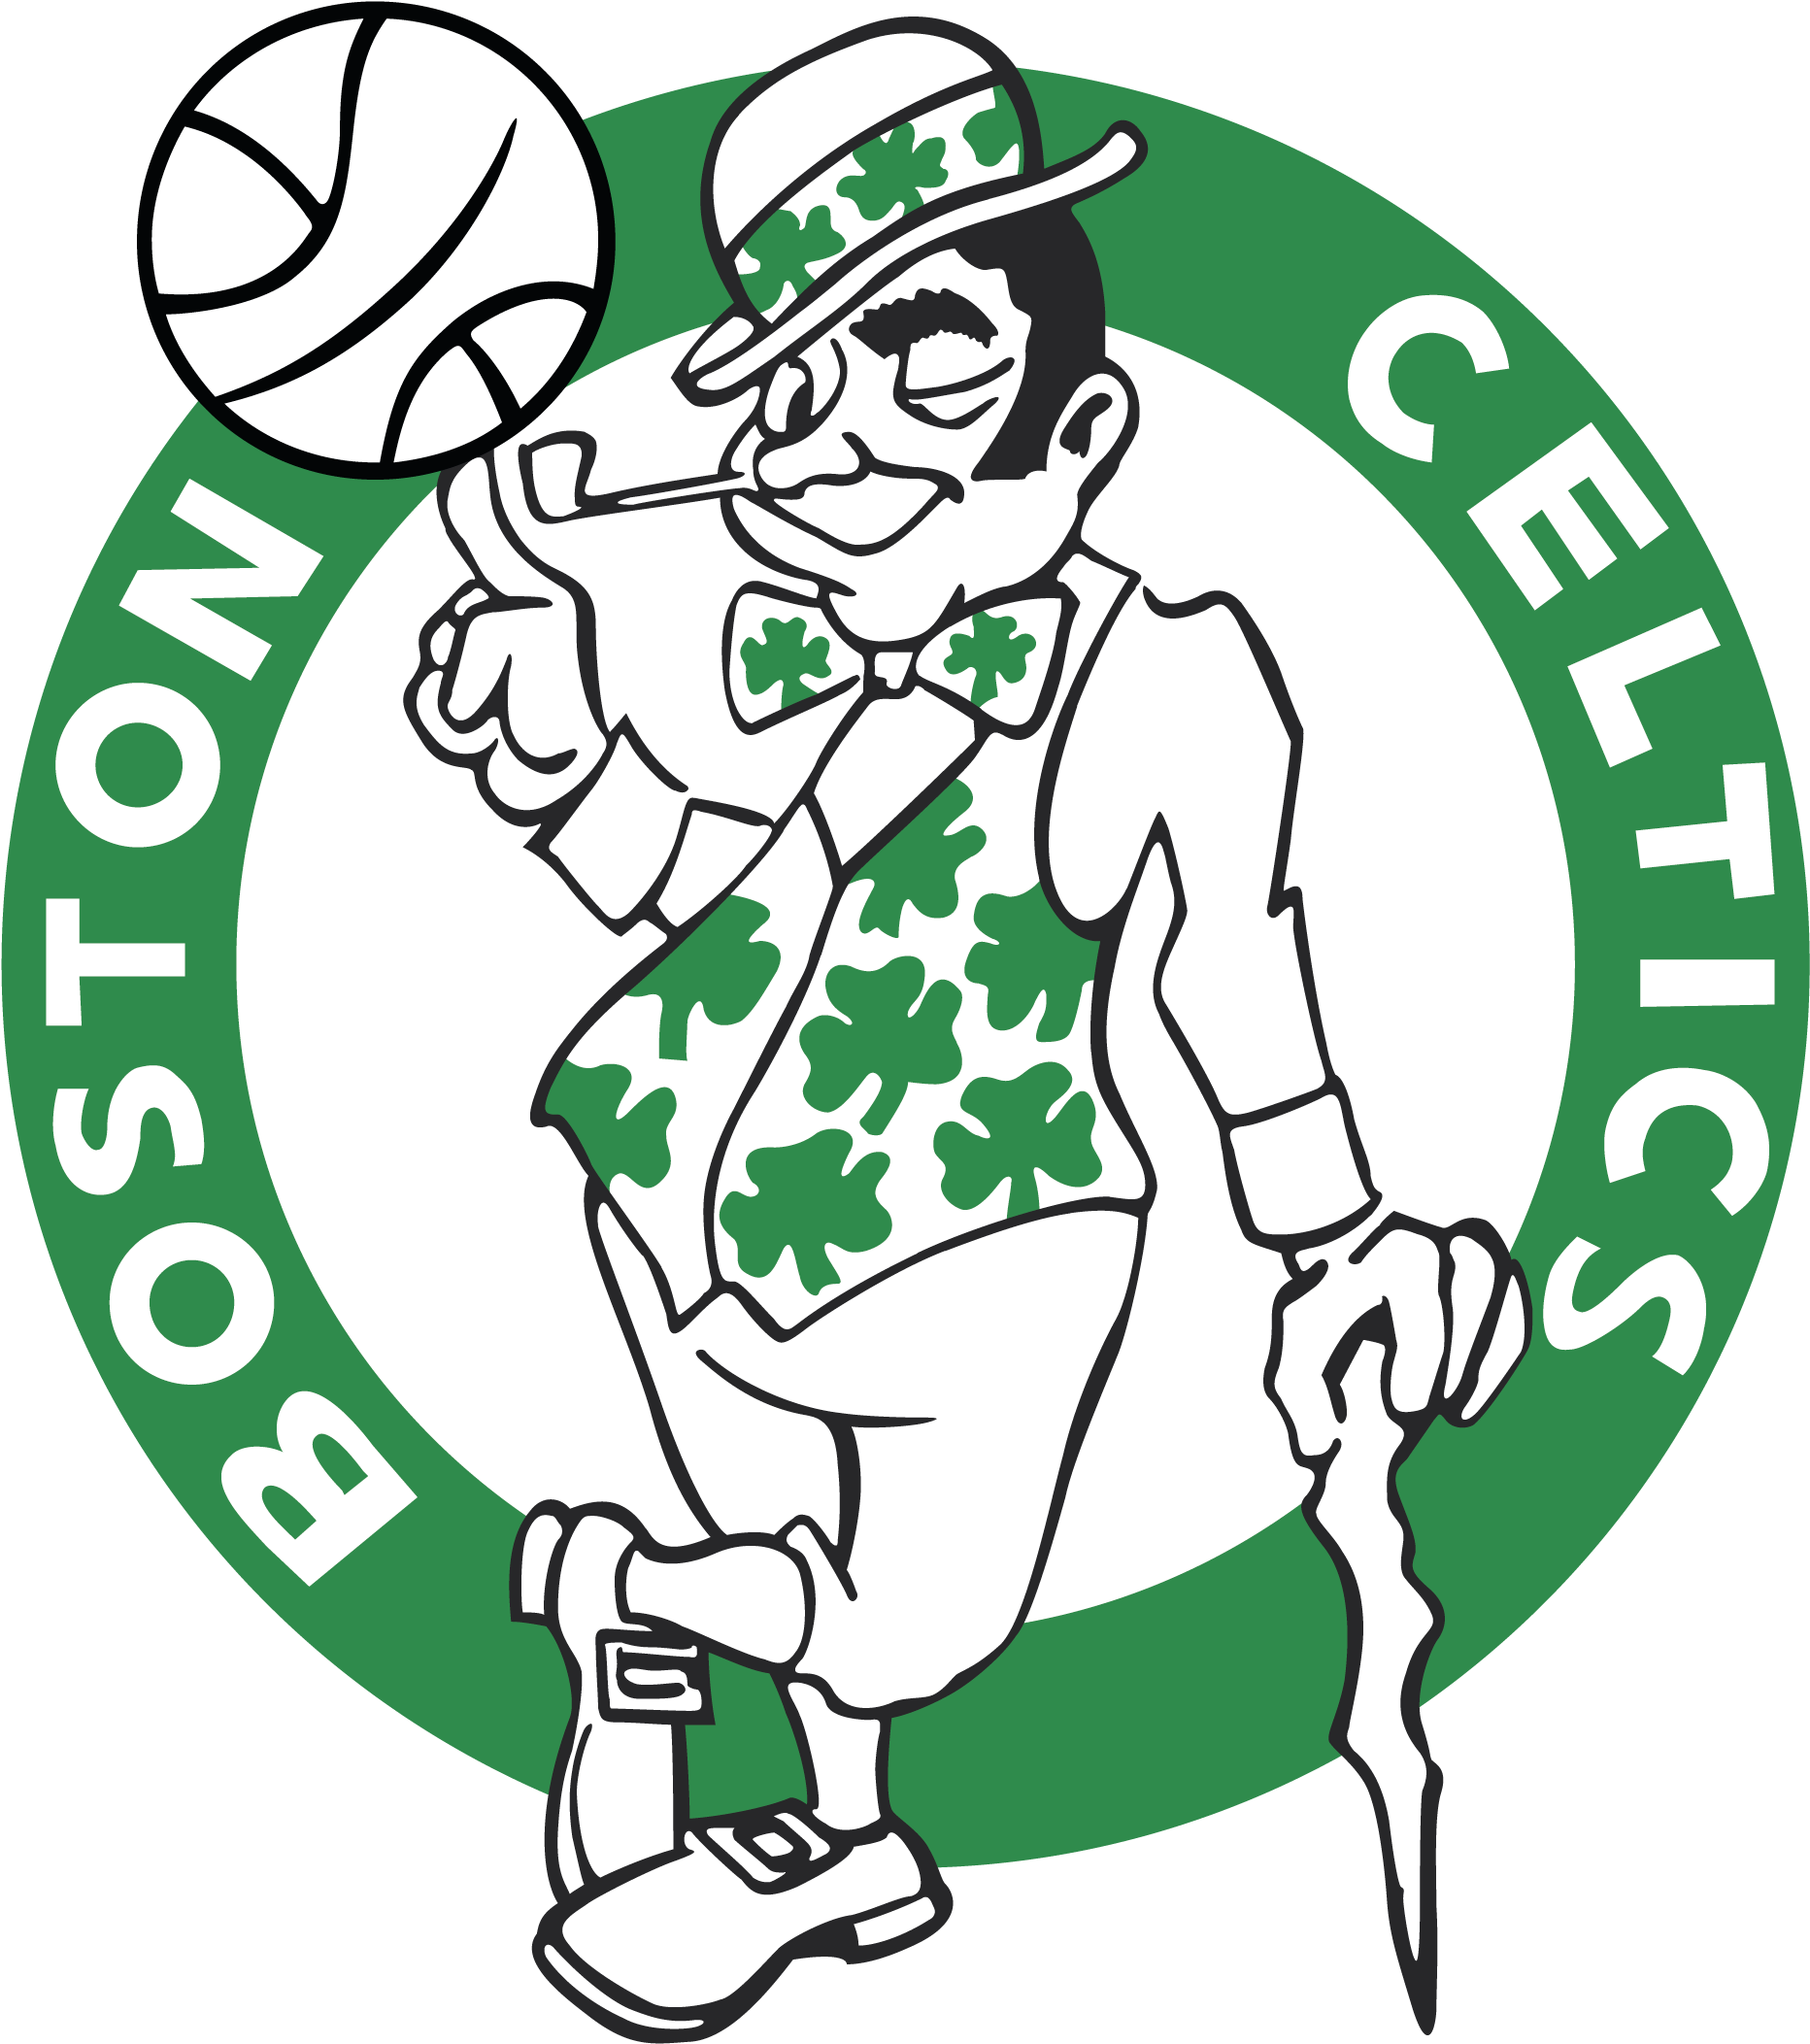 Boston Celtics Logo Retro (3840x2160)